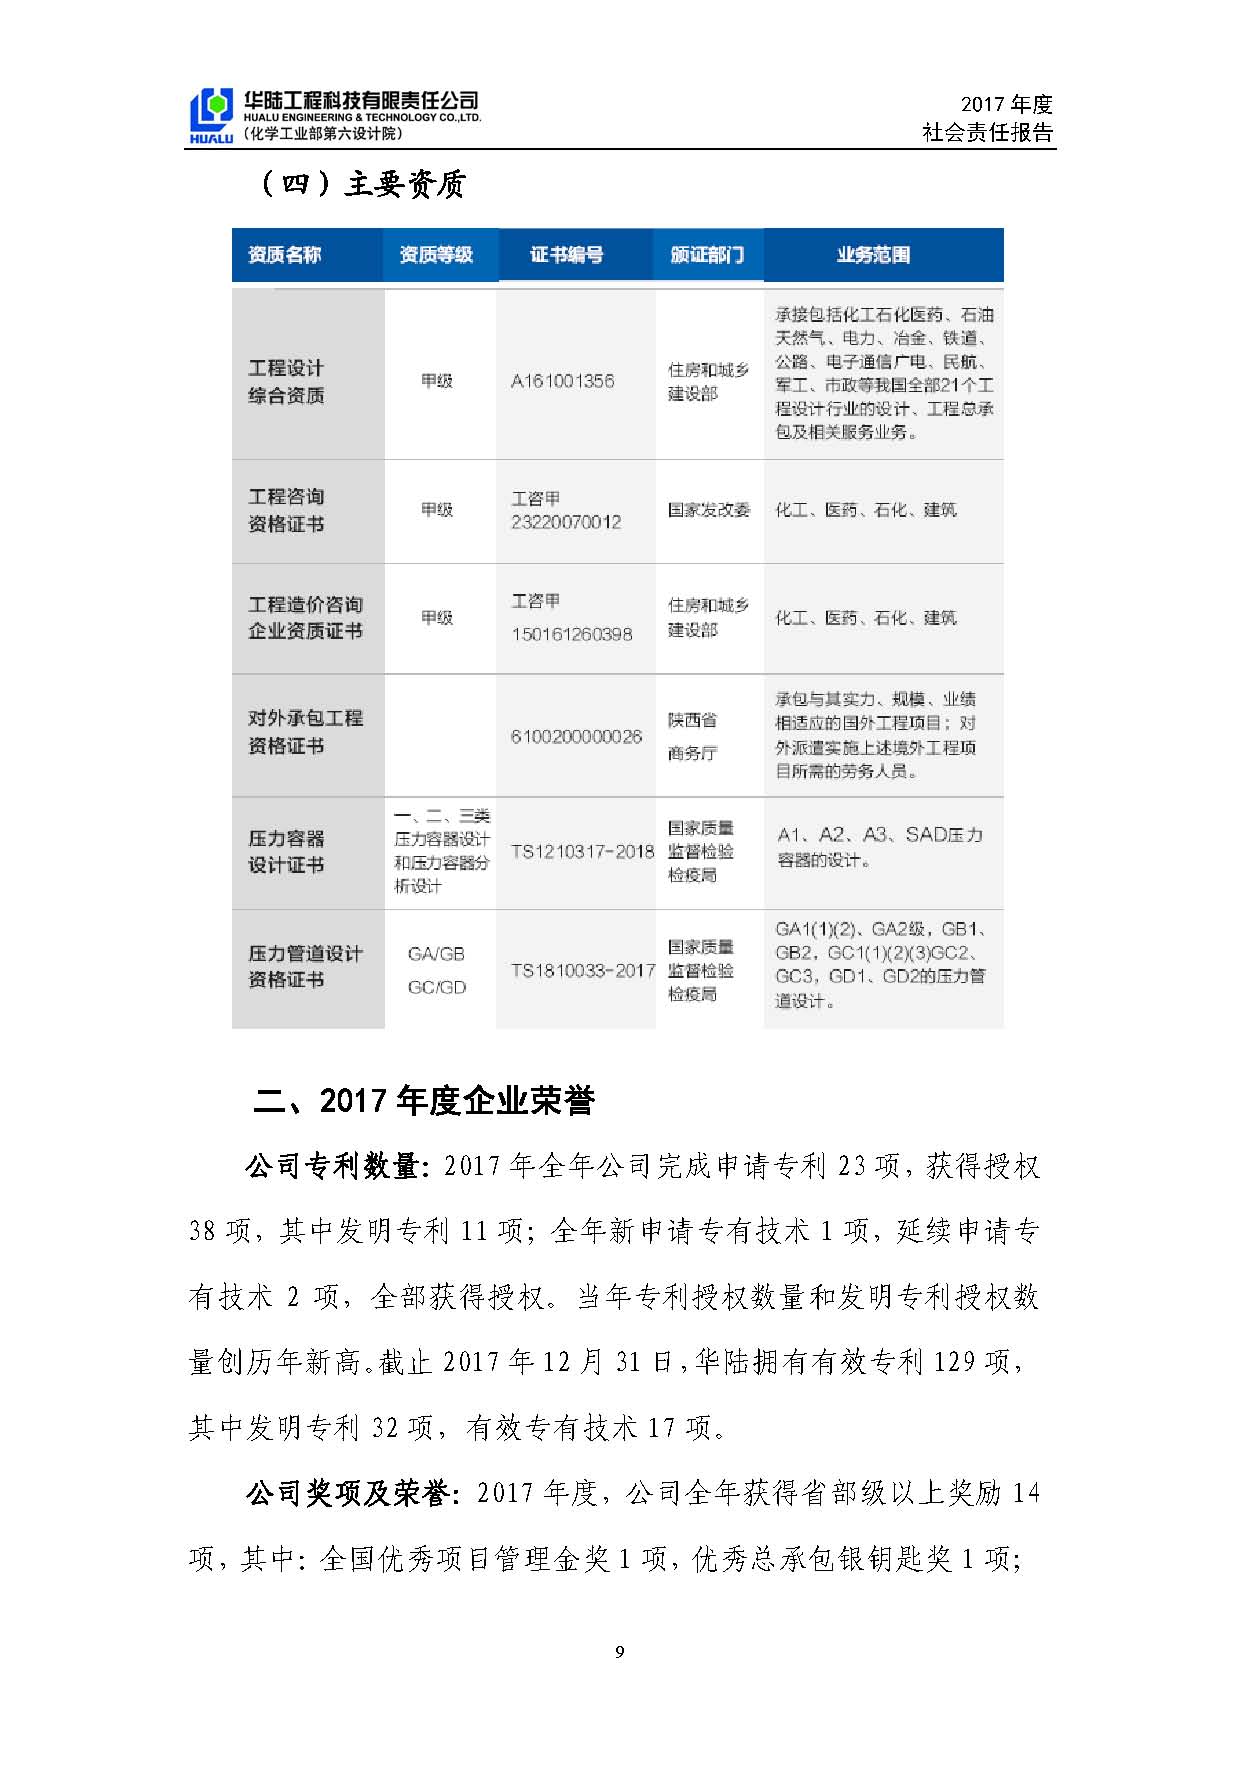 华陆工程科技有限责任公司2017年社会责任报告_页面_10.jpg